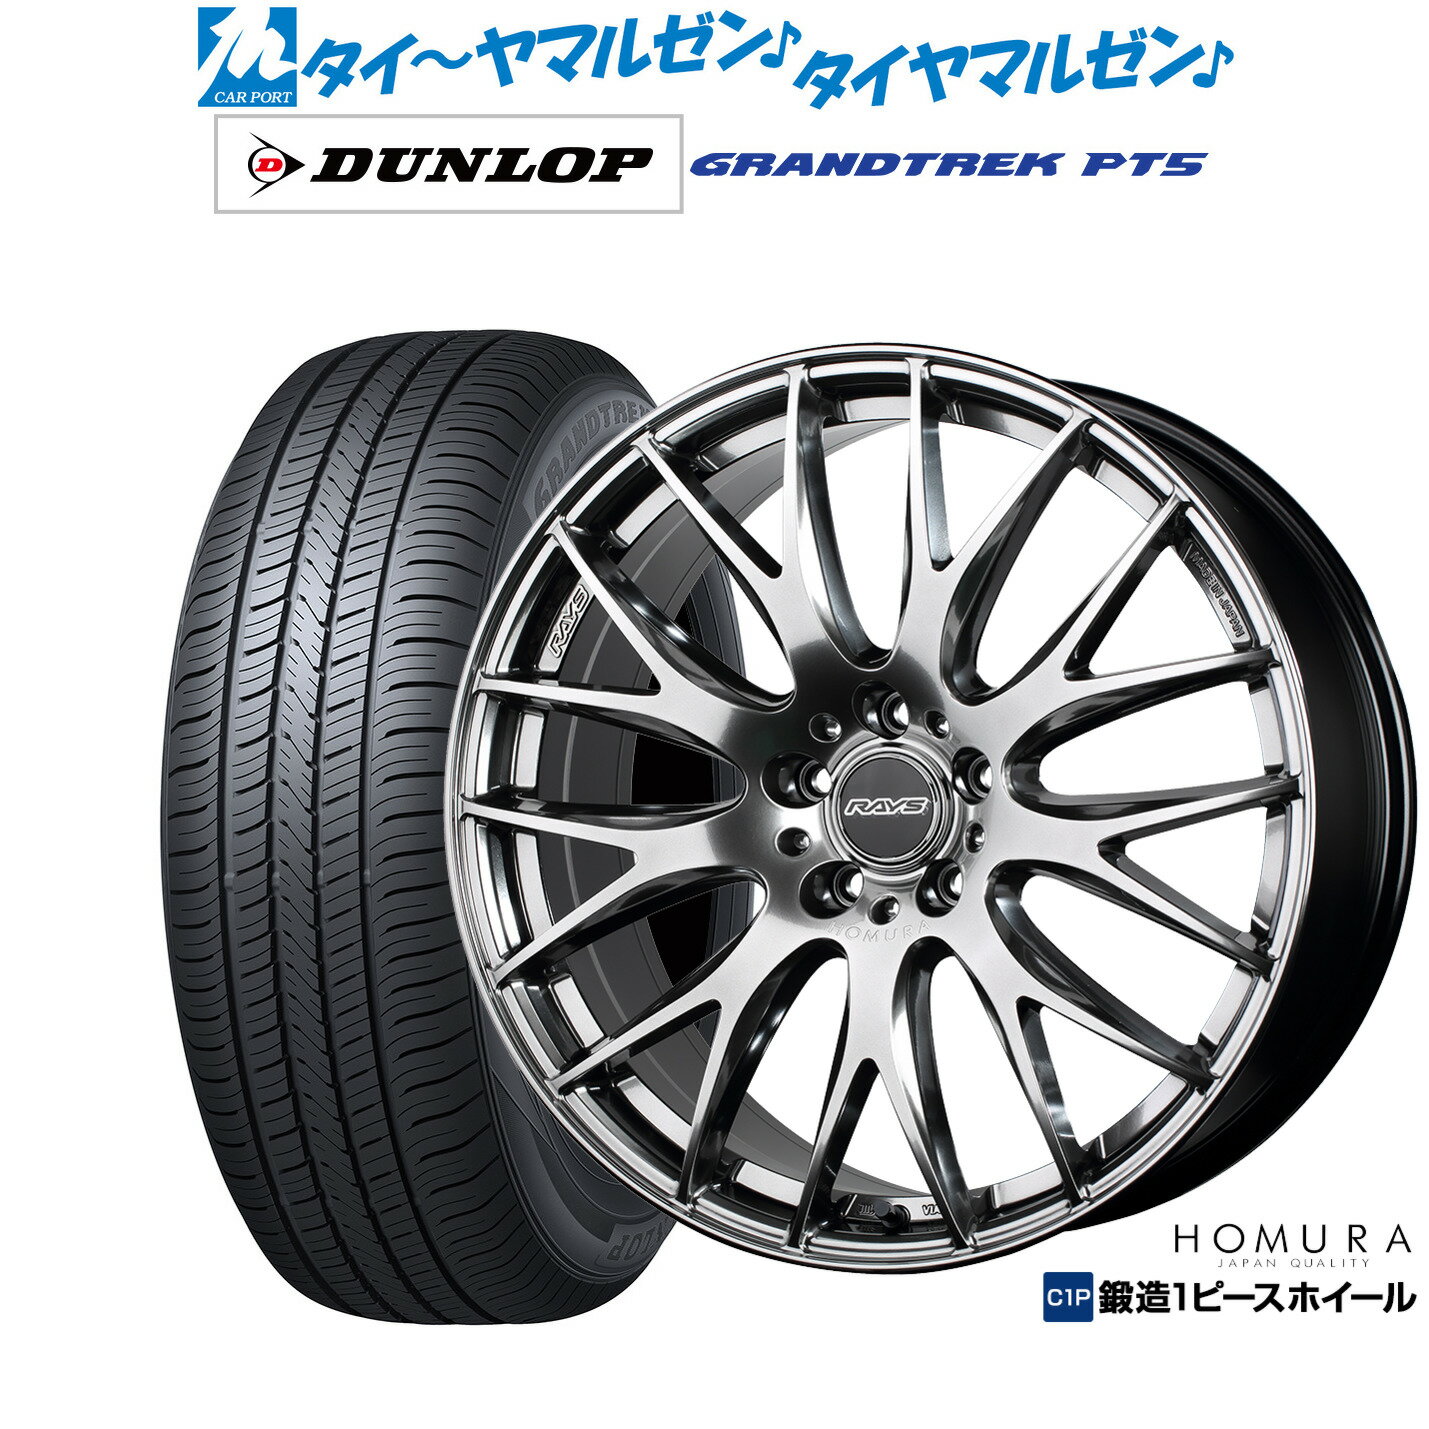 新品 サマータイヤ ホイール4本セットレイズ HOMURA ホムラ 2×9 Plus18インチ 7.5Jダンロップ グラントレック PT5225/60R18